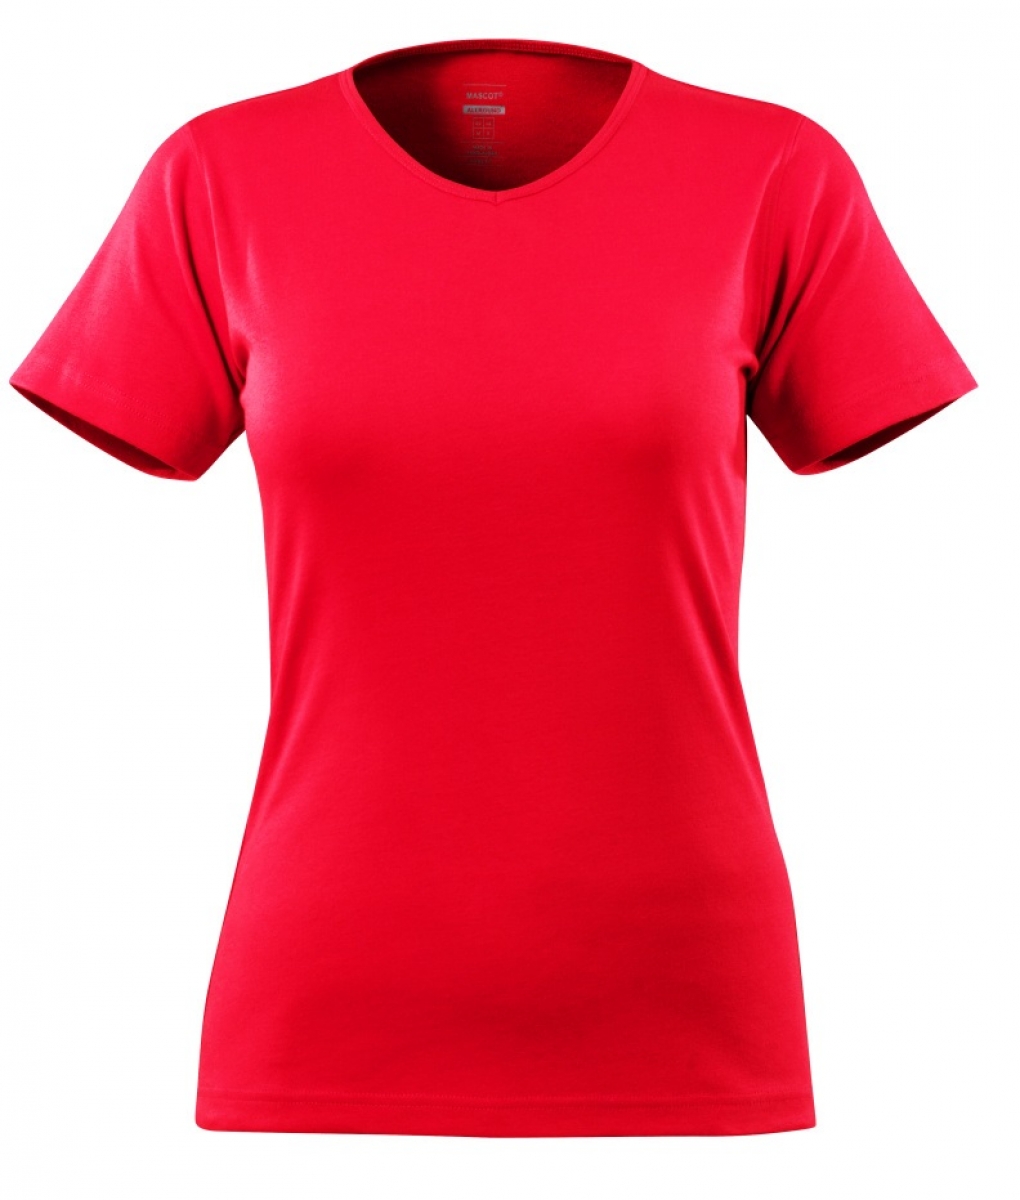 MASCOT-Worker-Shirts, Damen-T-Shirt, Nice, 220 g/m, verkehrsrot